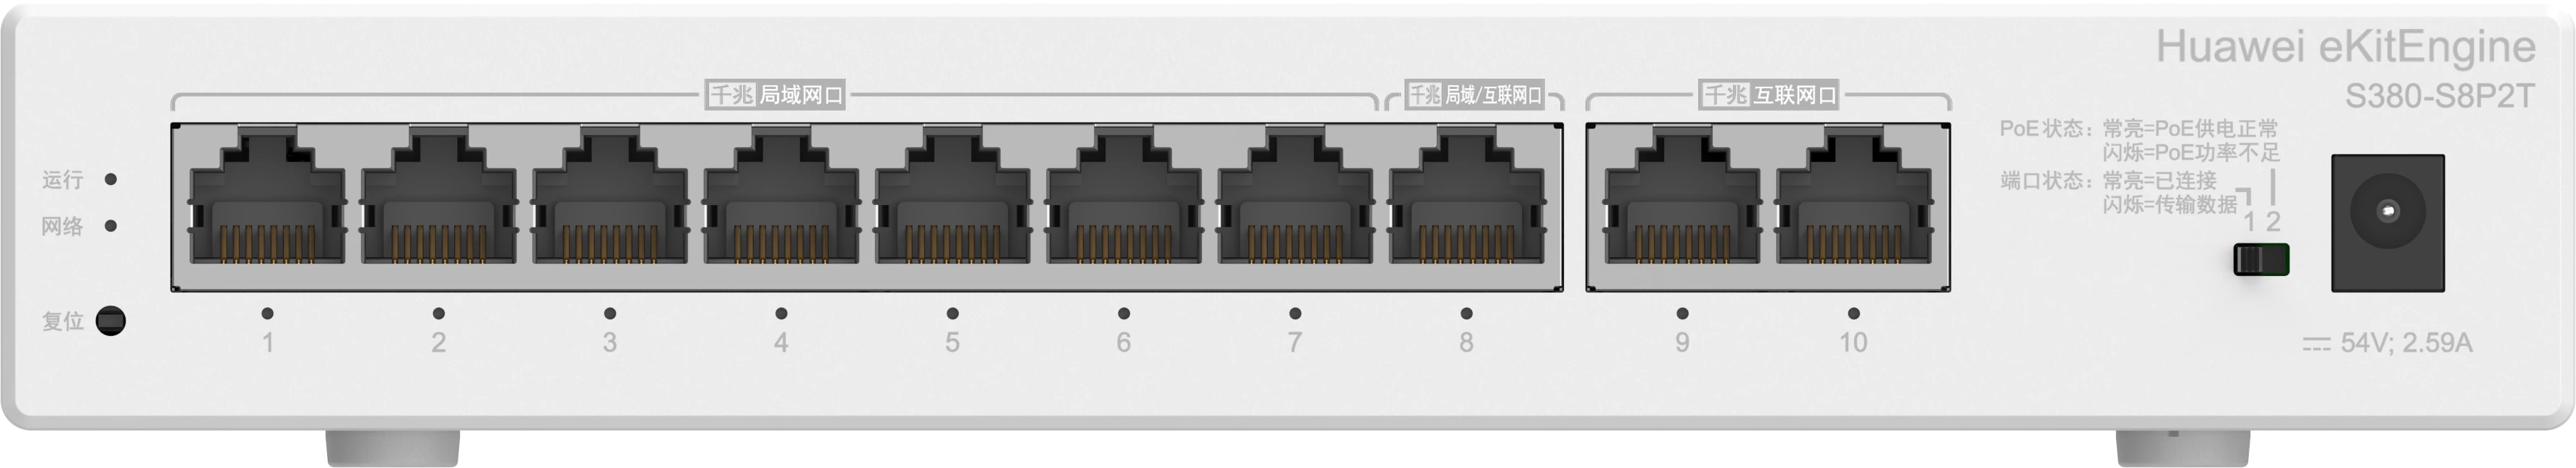 Huawei Ekit Engine S380-s8p2t 124w 10 Port 16gbit/s YÖnetİlebİlİr Switch